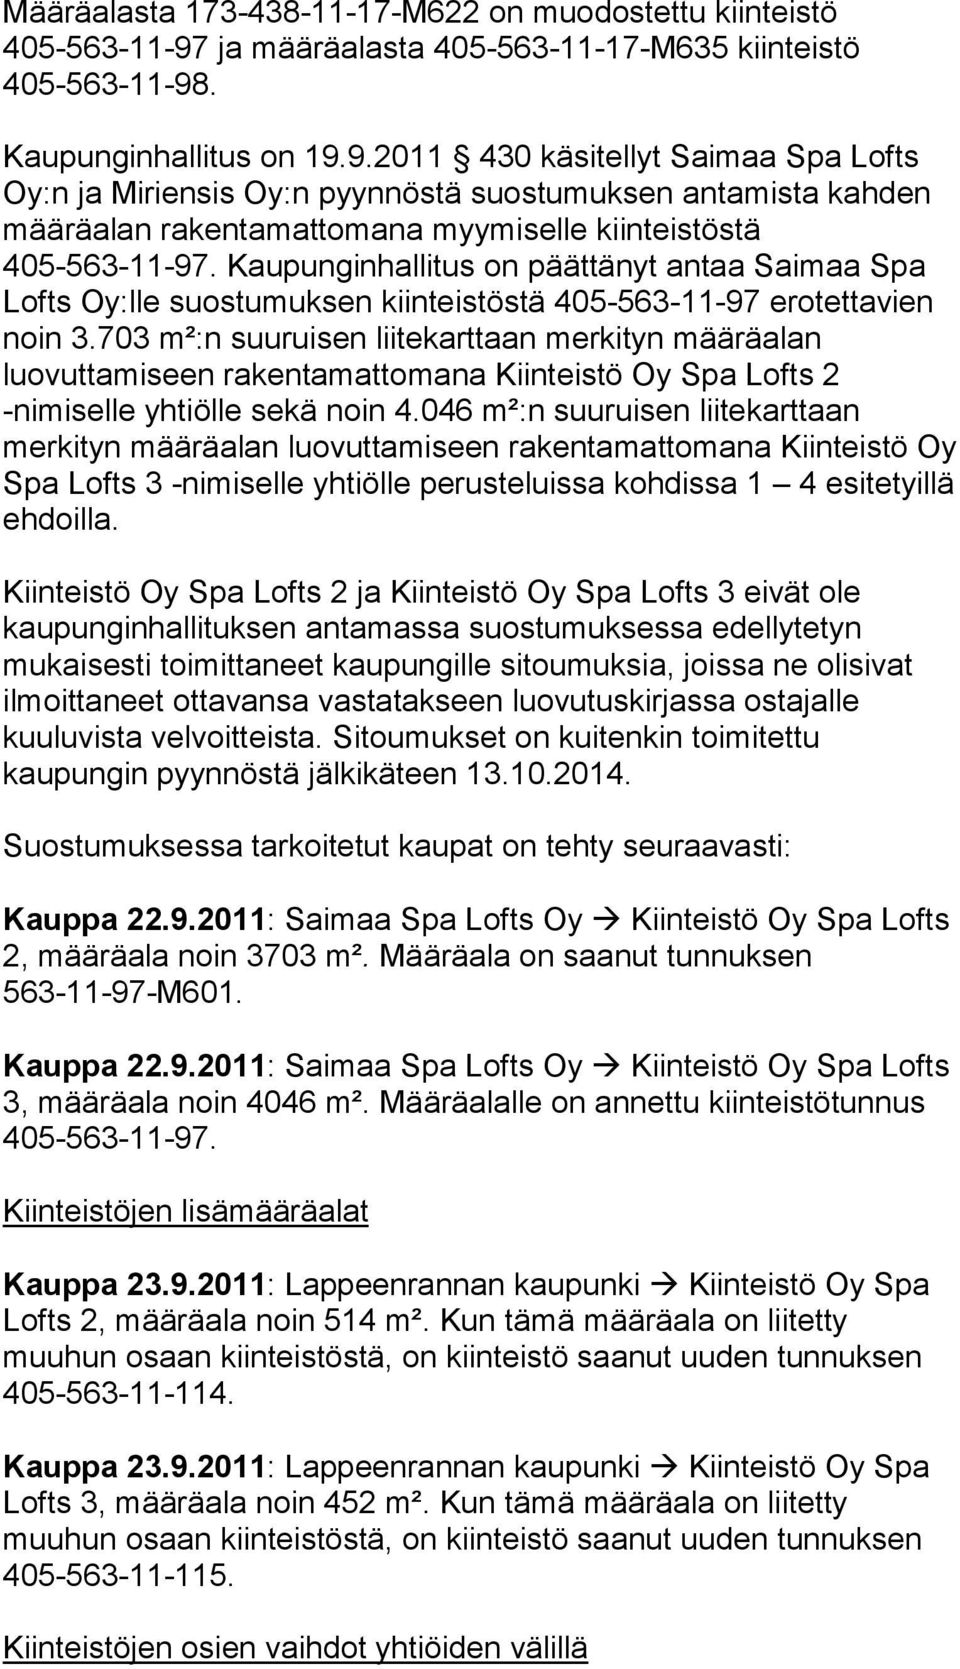 . Kaupunginhallitus on 19.9.2011 430 käsitellyt Saimaa Spa Lofts Oy:n ja Miriensis Oy:n pyynnöstä suostumuksen antamista kahden määräalan rakentamattomana myymiselle kiinteistöstä 405-563-11-97.